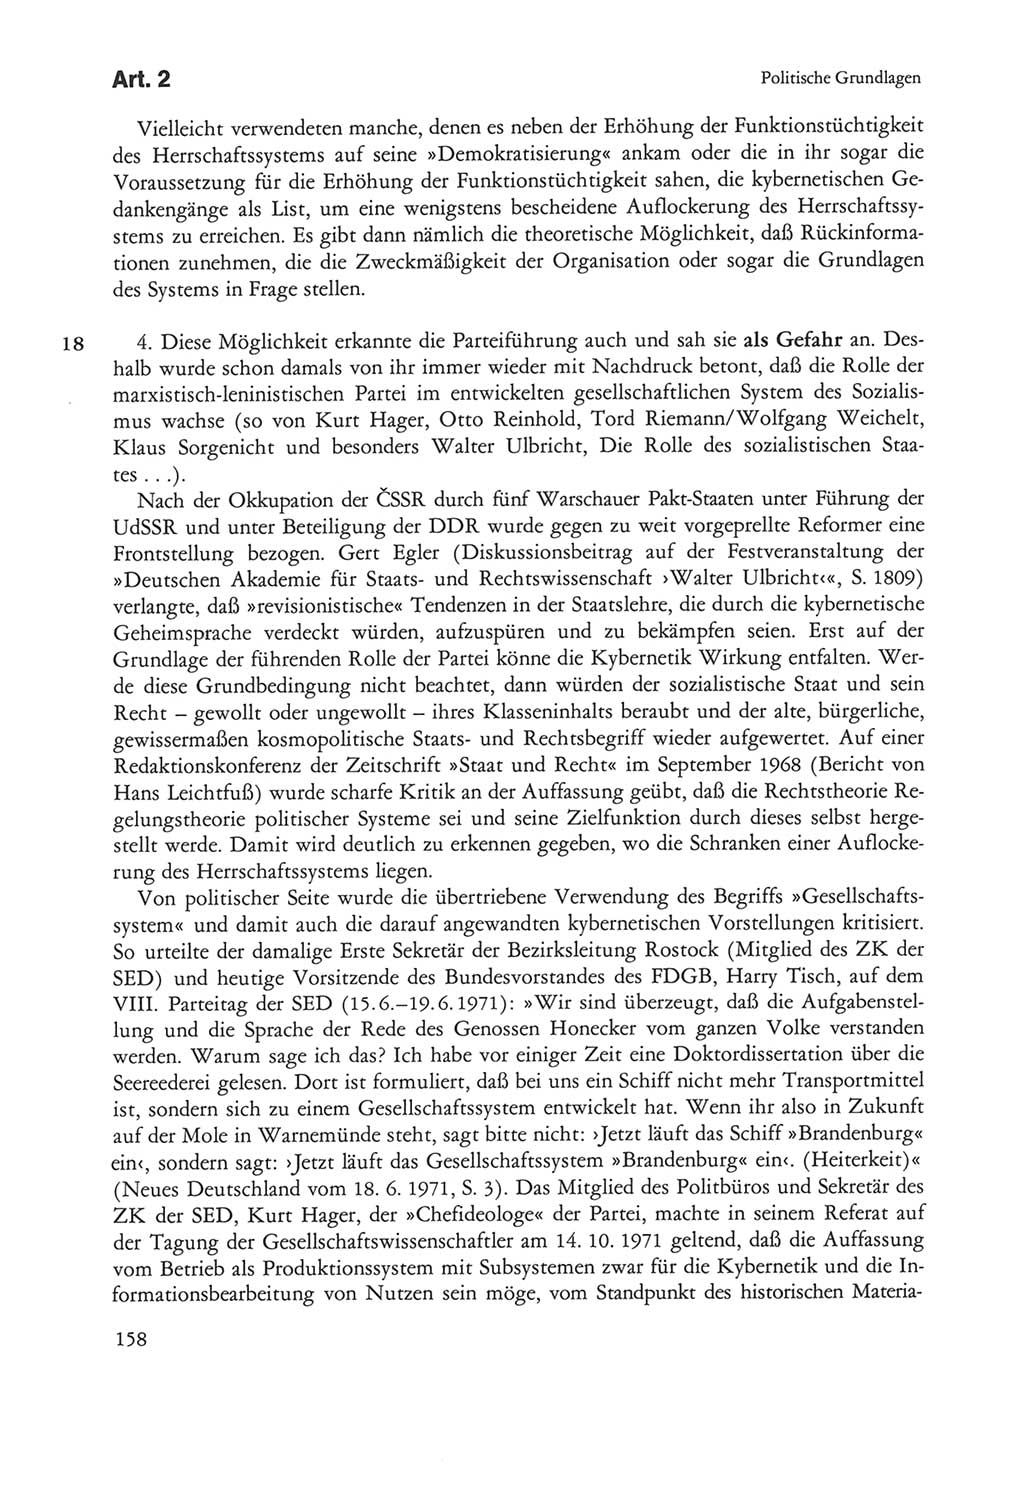 Die sozialistische Verfassung der Deutschen Demokratischen Republik (DDR), Kommentar mit einem Nachtrag 1997, Seite 158 (Soz. Verf. DDR Komm. Nachtr. 1997, S. 158)